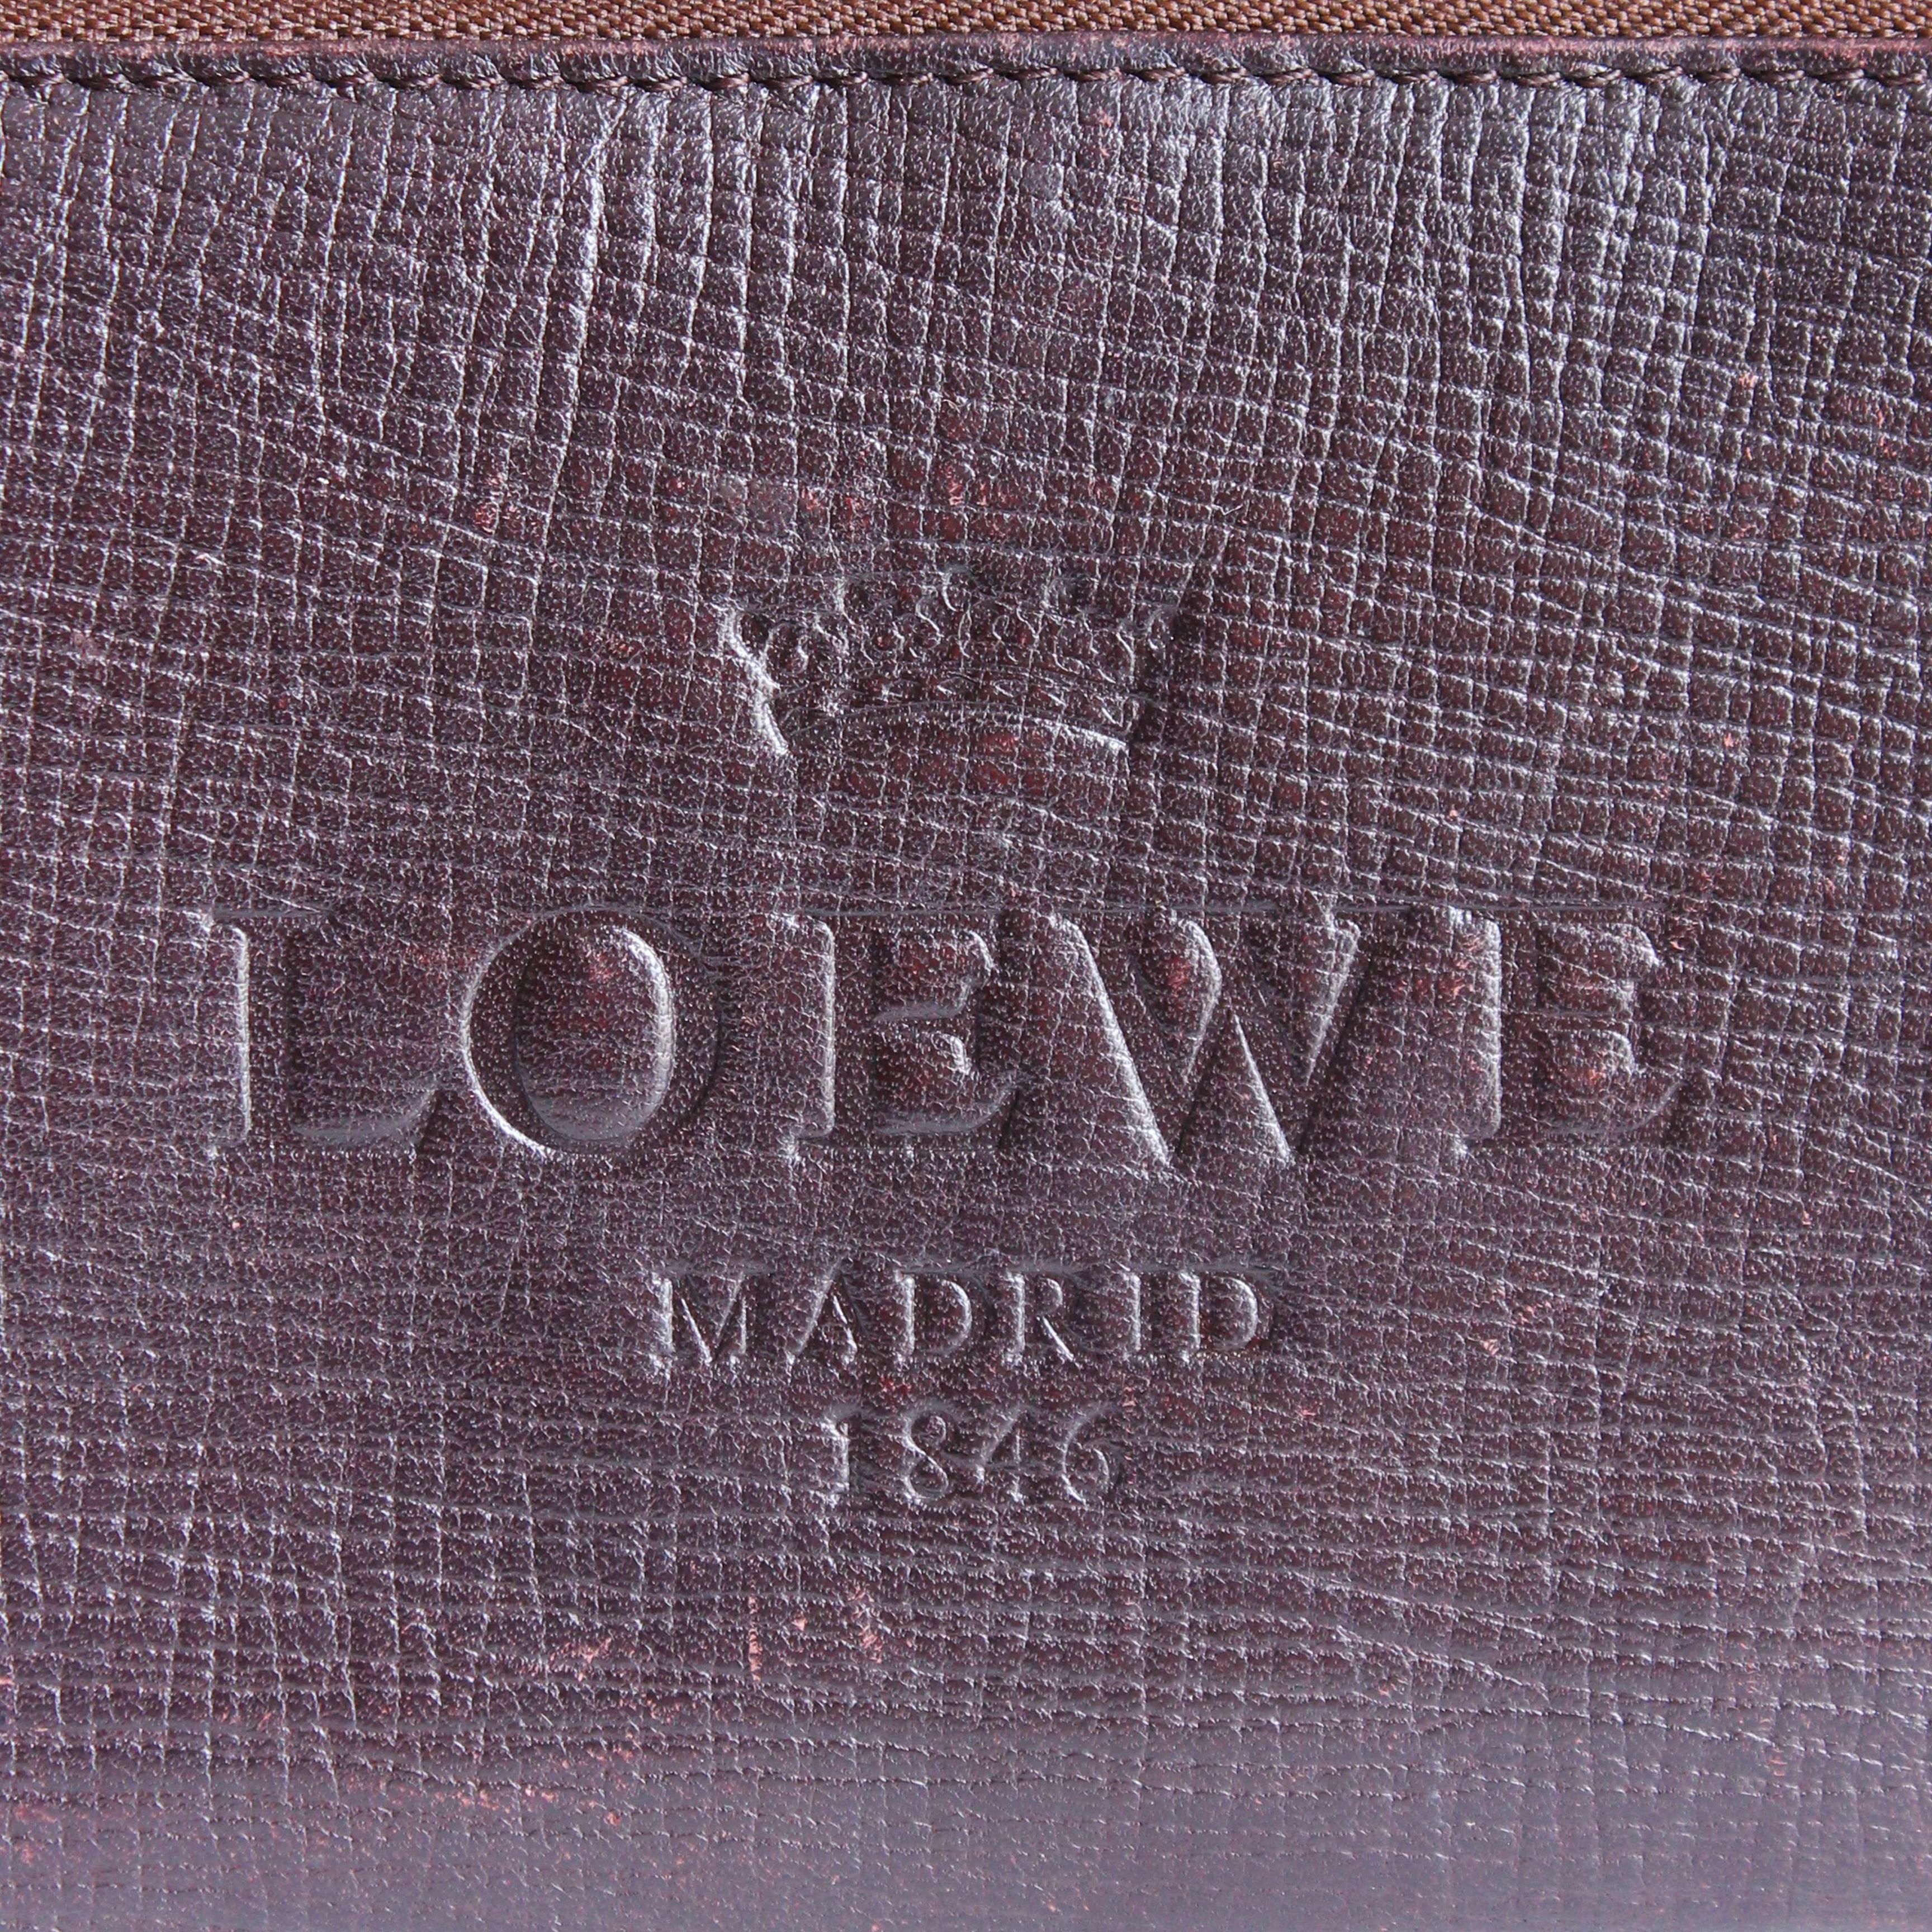 loewe madrid 1846